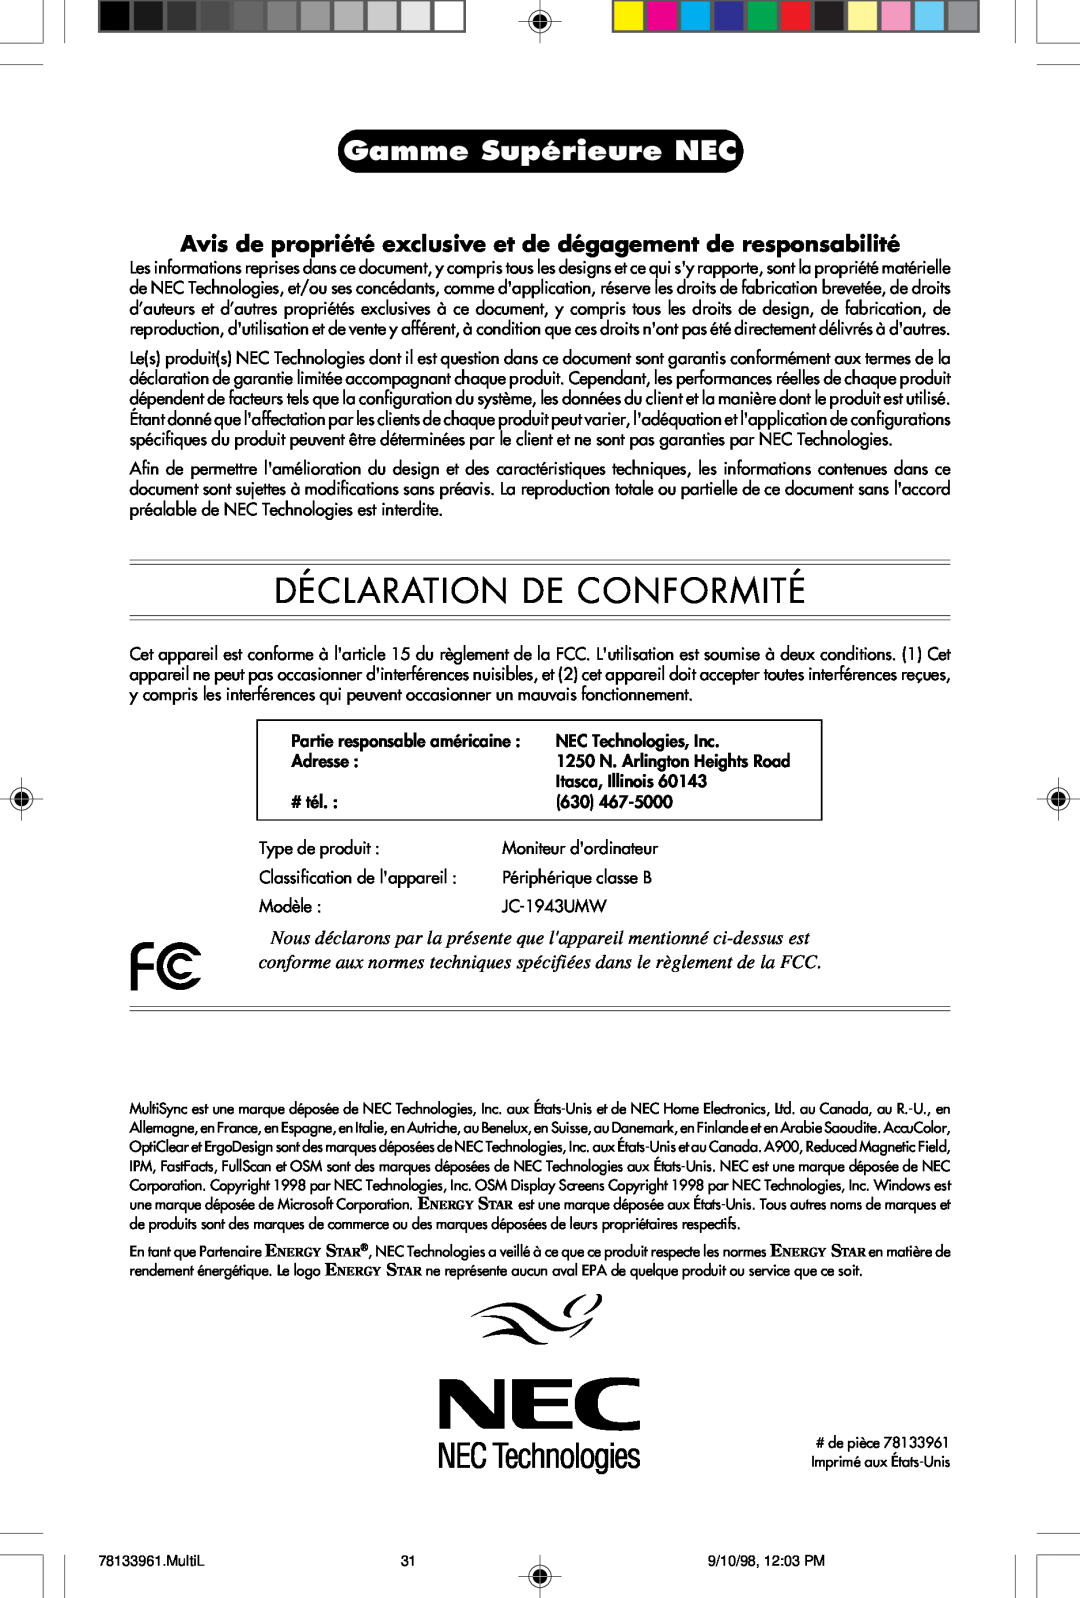 NEC A900 user manual Déclaration De Conformité, Gamme Supérieure NEC 